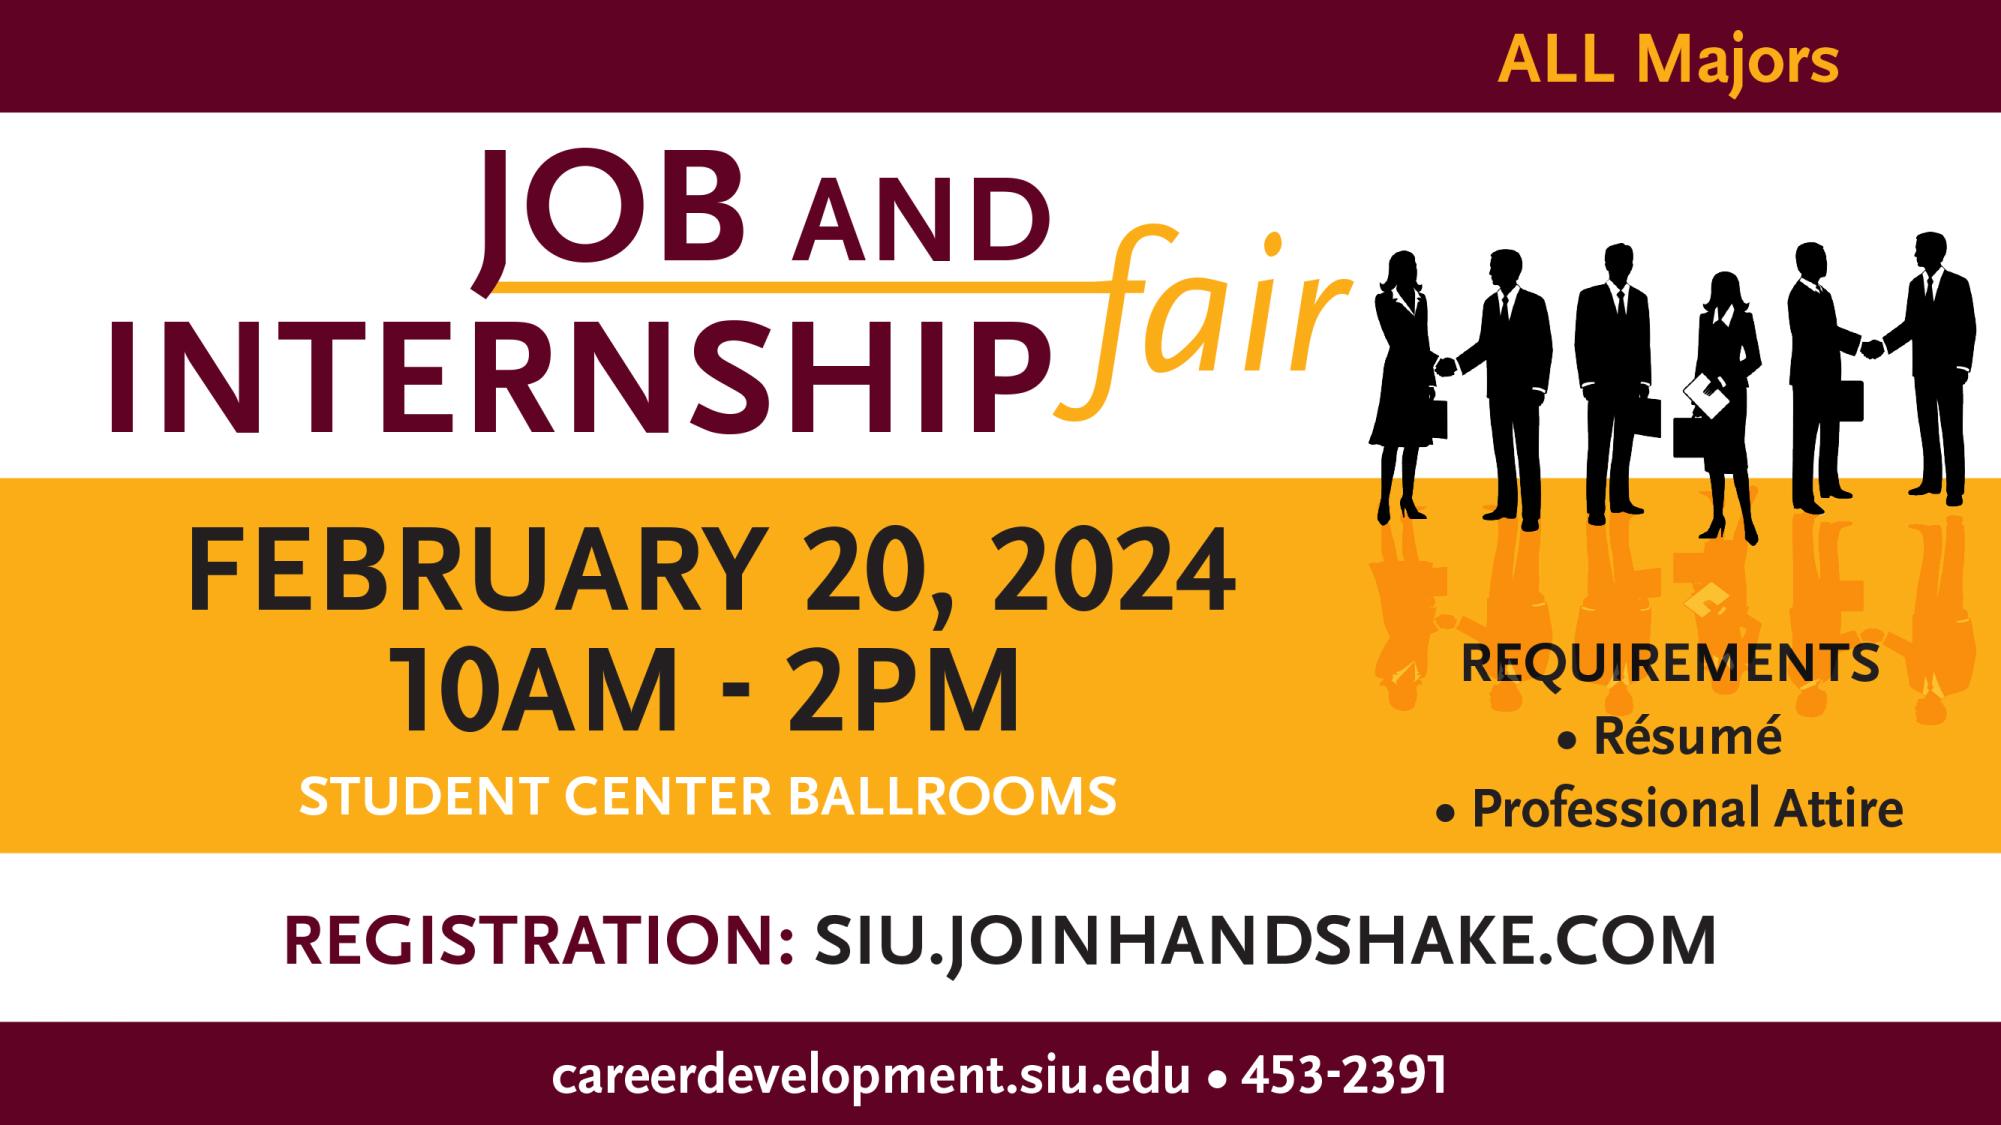 Job and Internship Fair February 20th, 2024